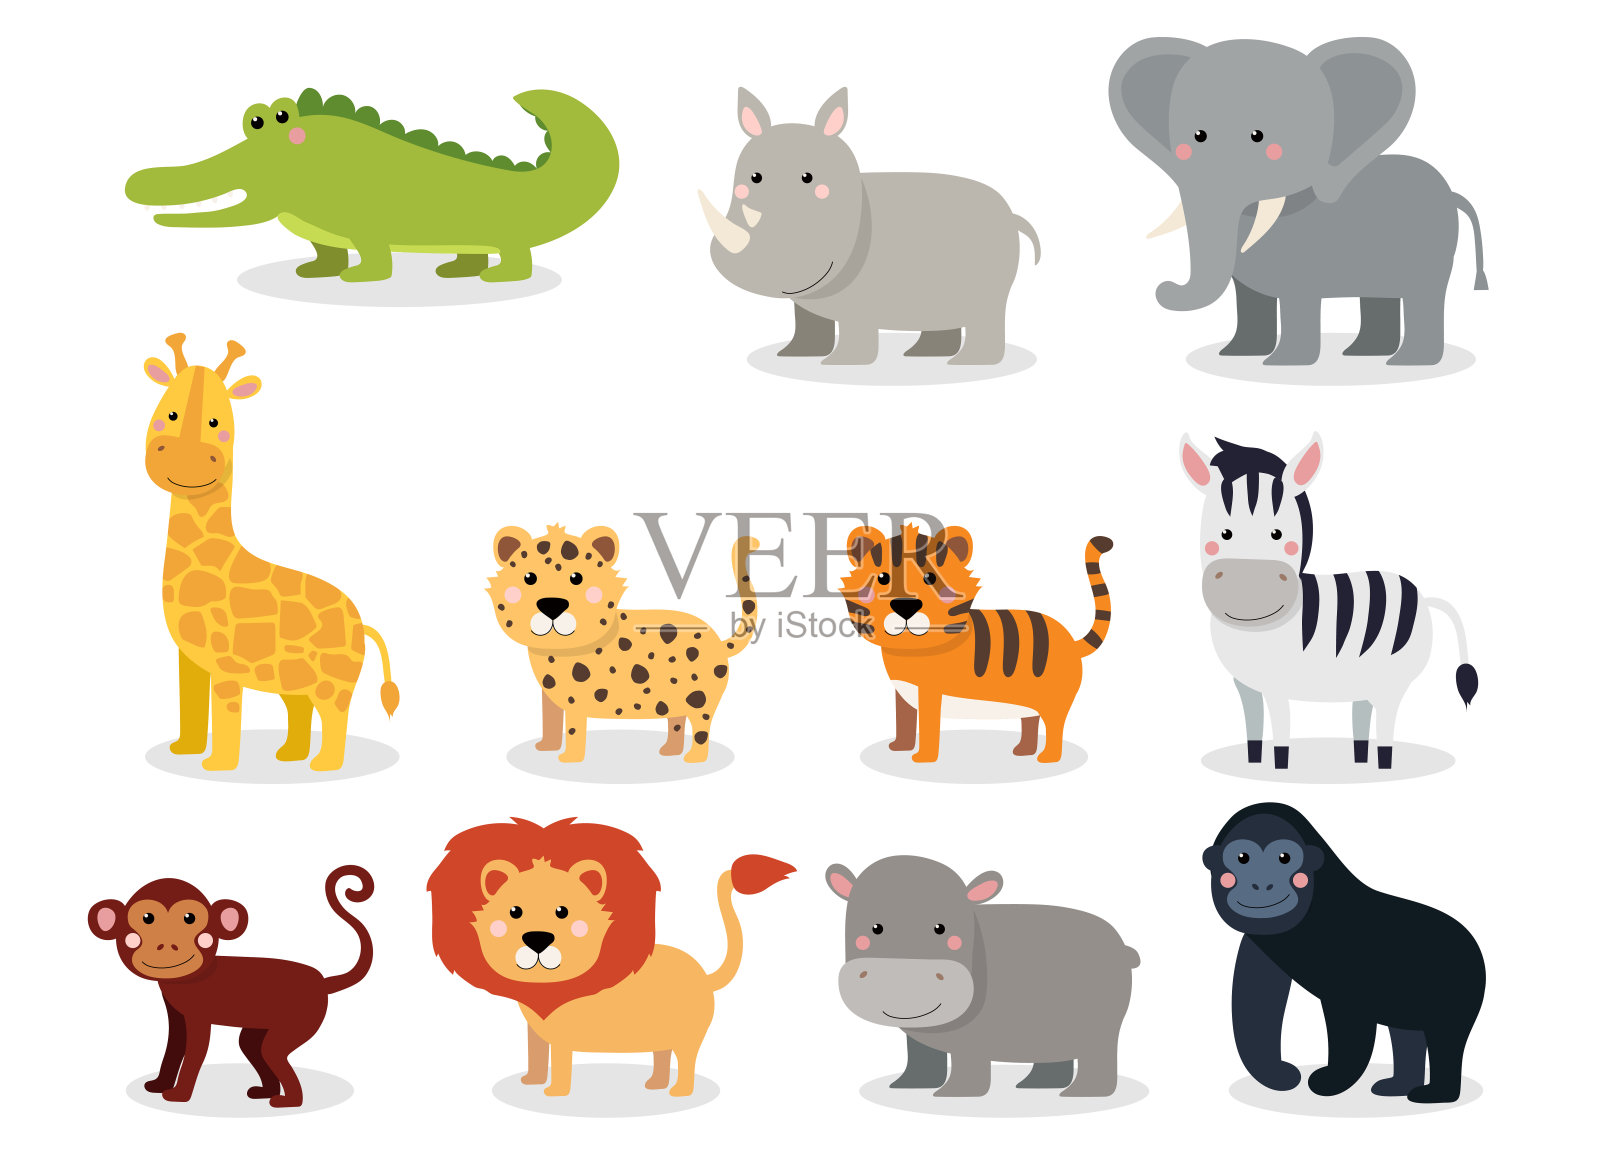 野生动物设置在平面风格孤立在白色背景。矢量插图。收藏可爱卡通动物:鳄鱼、犀牛、大象、长颈鹿、豹子、老虎、斑马、猴子、狮子、河马设计元素图片